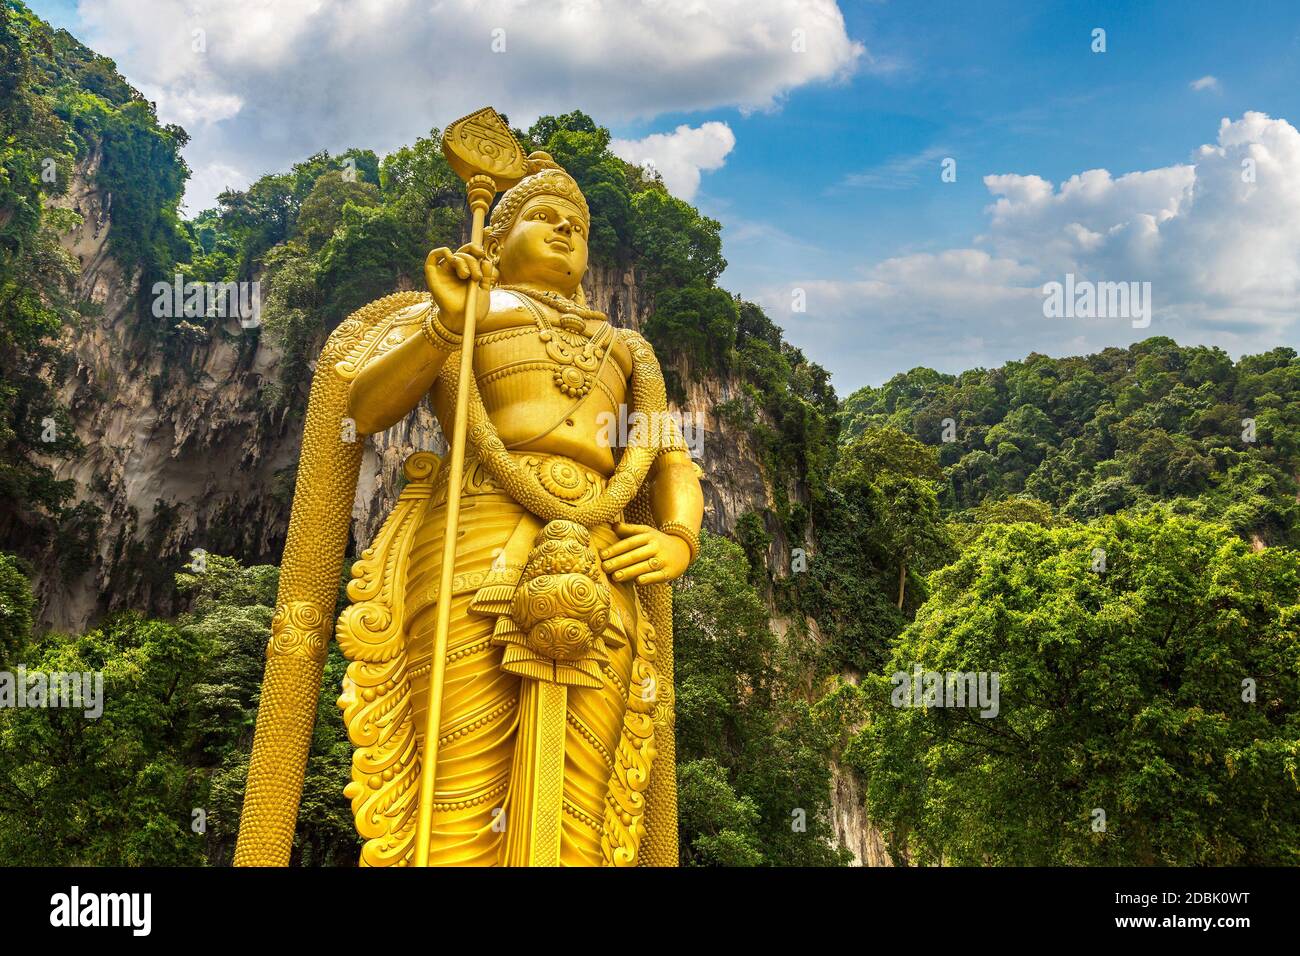 Statue of hindu god Murugan at Batu cave in Kuala Lumpur, Malaysia ...